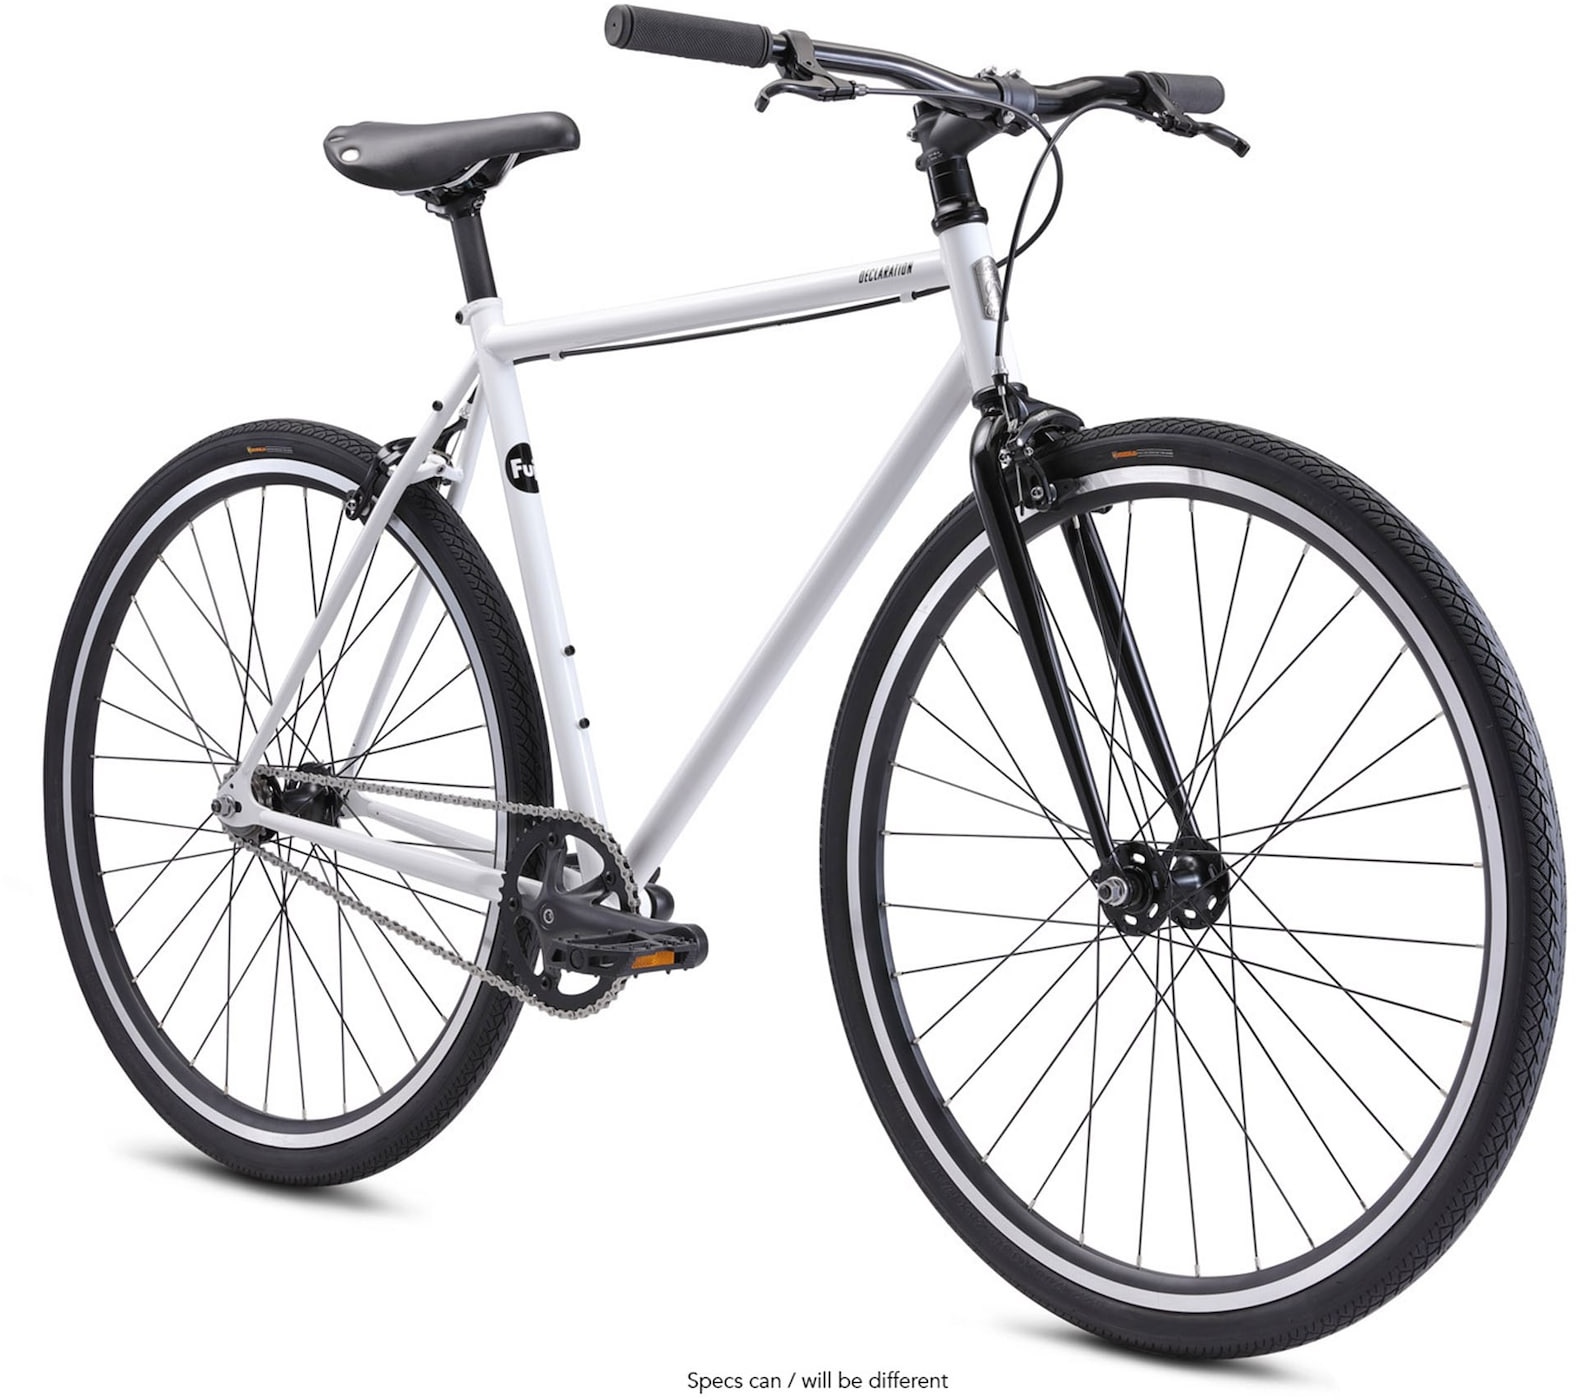 Fuji Declaration Fixie Fahrrad 28 Zoll für Damen und Herren ab 155 cm Singlespeed Urban Bike